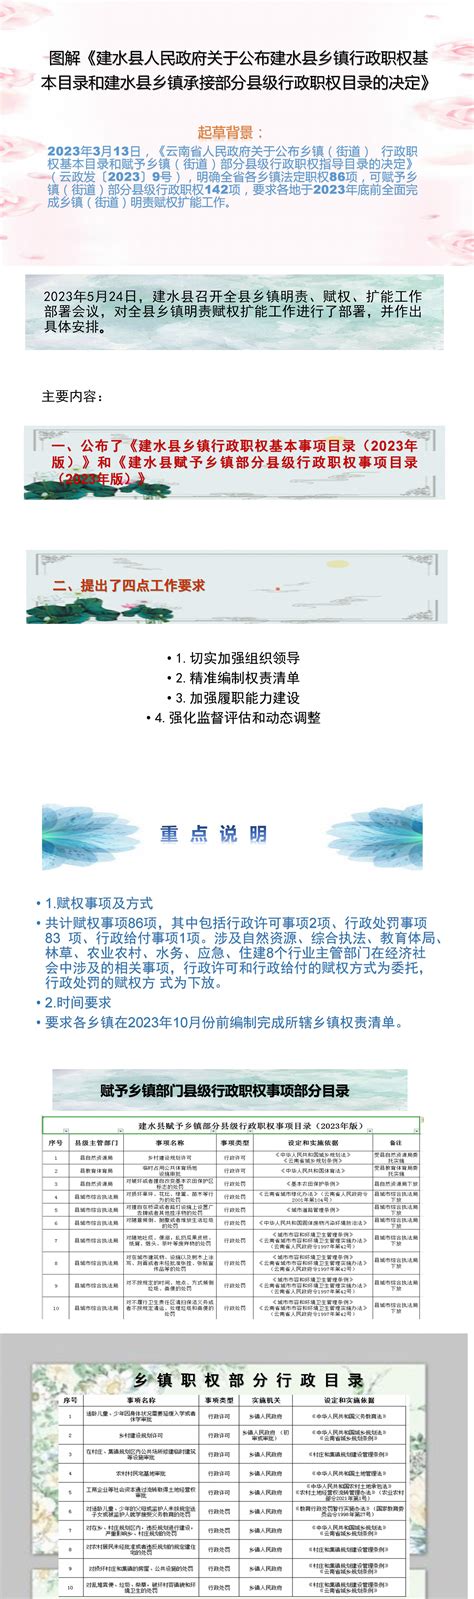 建水县人民政府办公室关于印发建水县“十四五”生态环境保护规划的通知